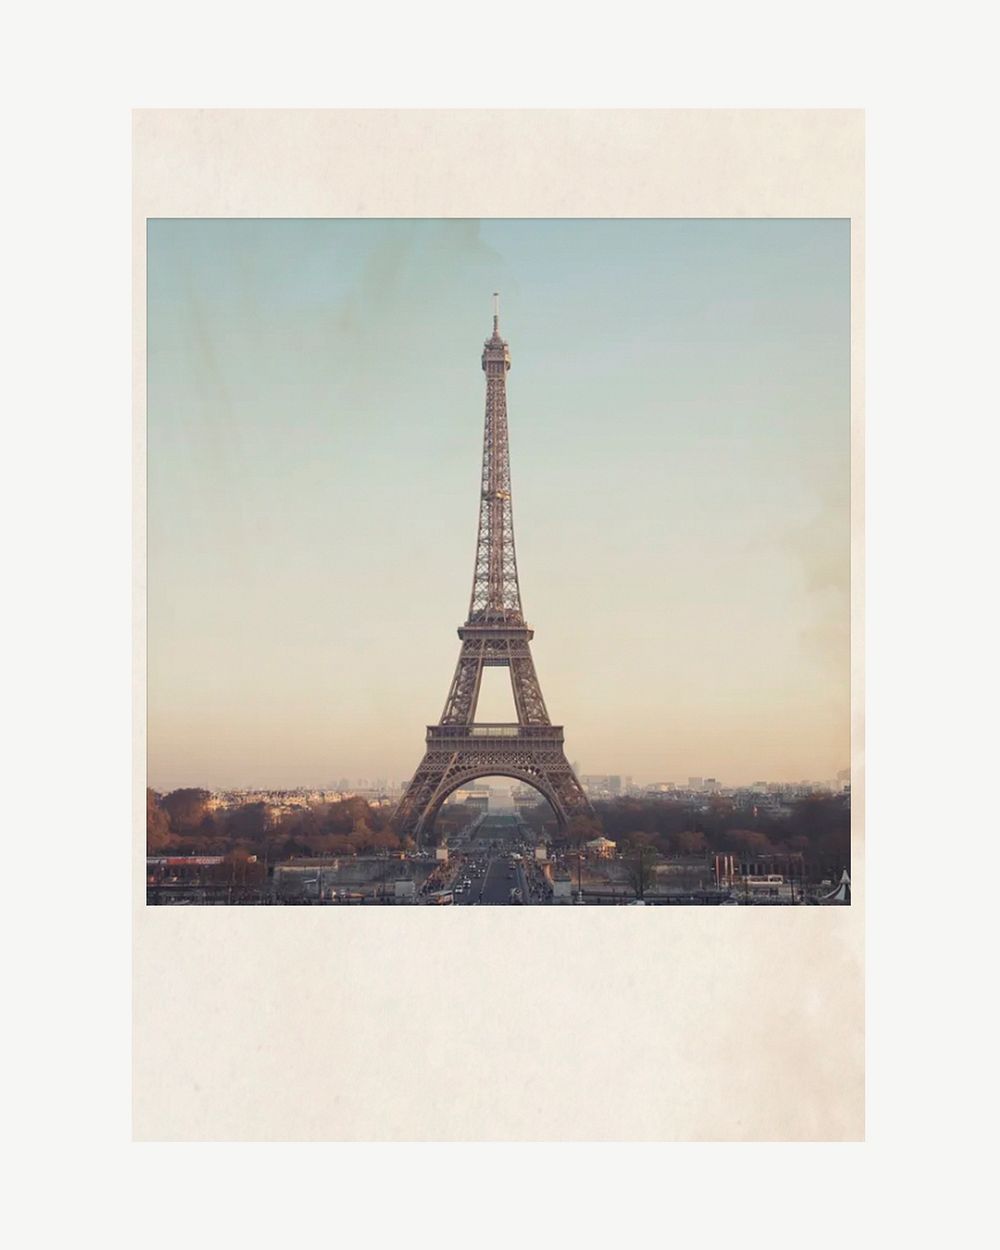 Instant film frame mockup, France travel psd